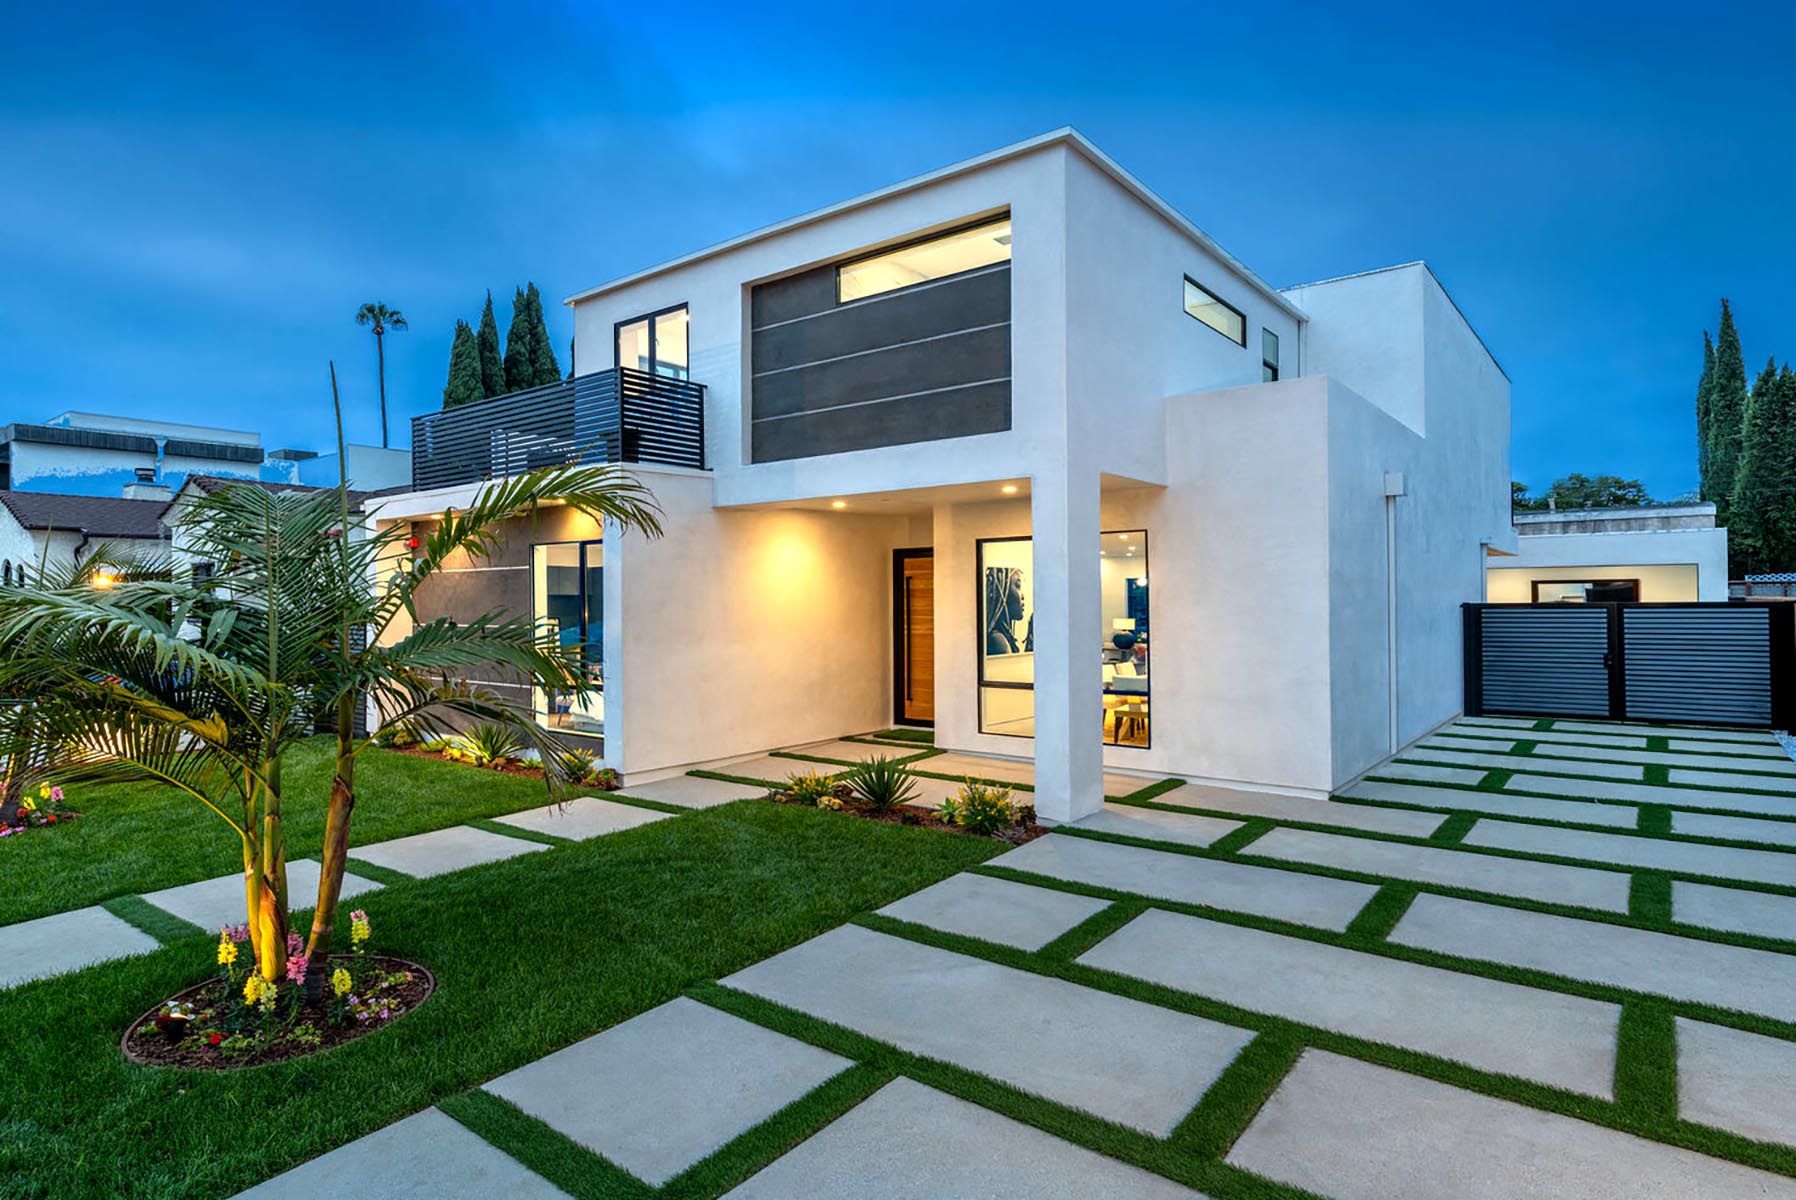 Home design Los Angeles modern contemporary exterior 1